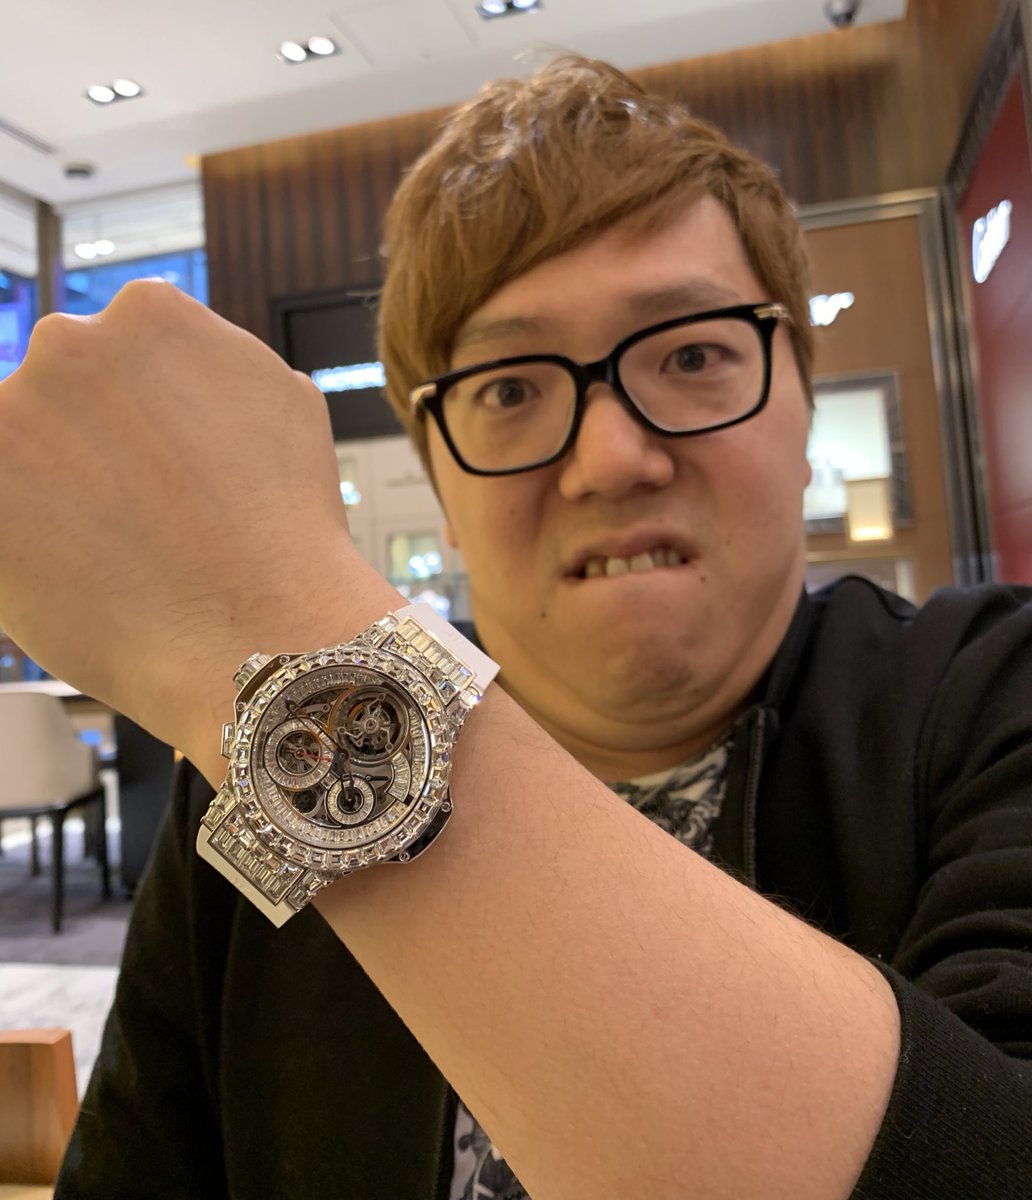 この時計
1億4437万円😨
144,374,400円🥶🥶🥶

東海オンエアのチャンネルで時計買うコラボ動画上がってるので是非ご覧下さいw

#時計
#東海オンエア
#ヒカキン
#HUBLOT
#ウブロ